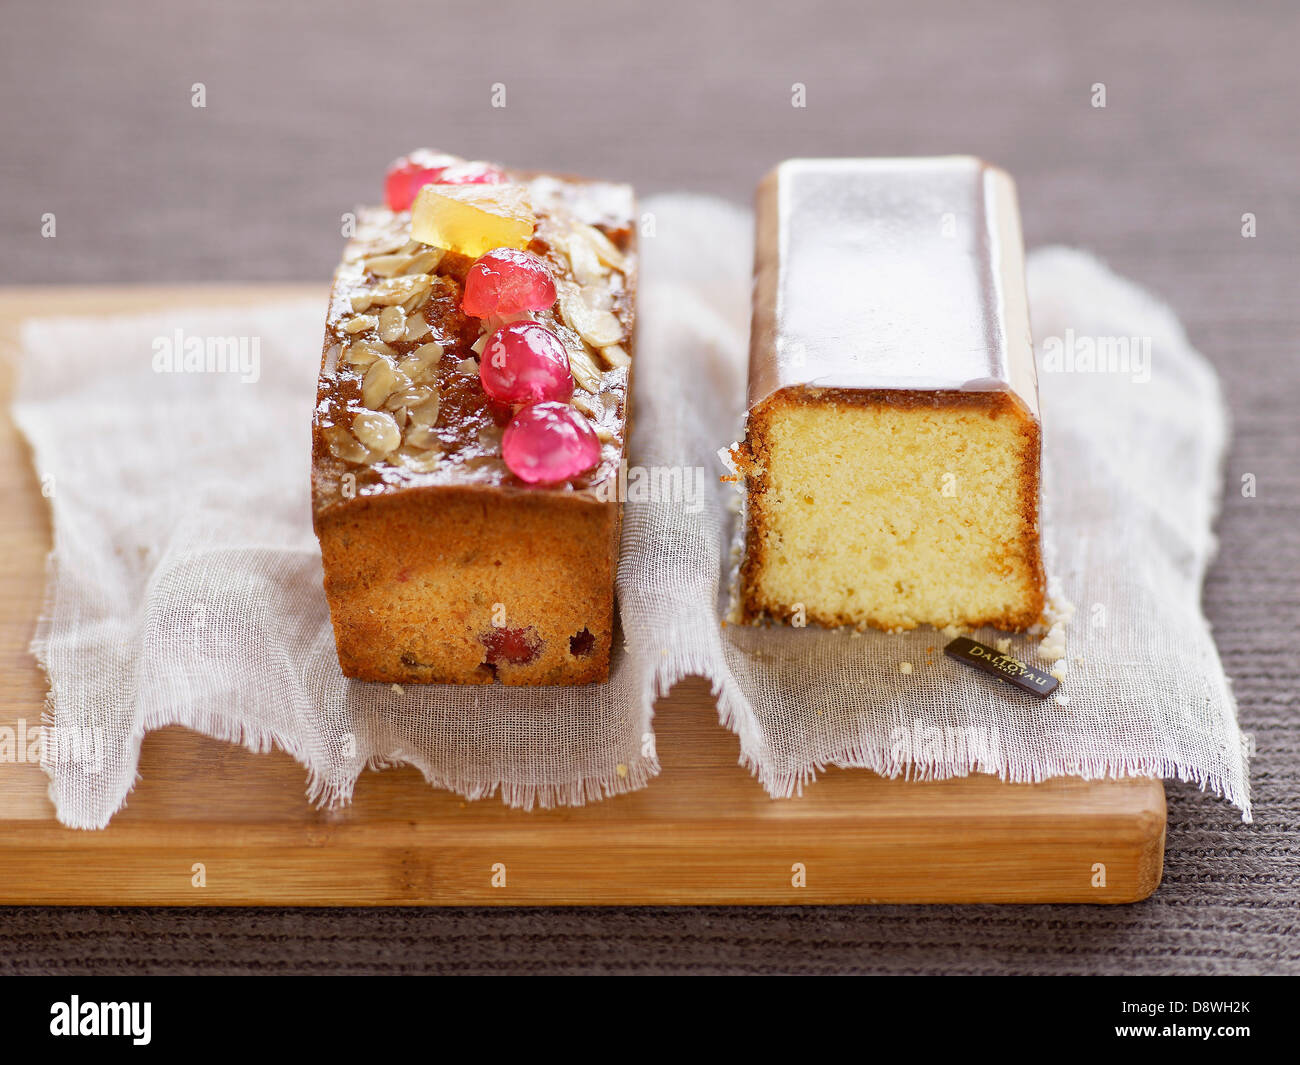 Fruit cake and lemon cake Stock Photo